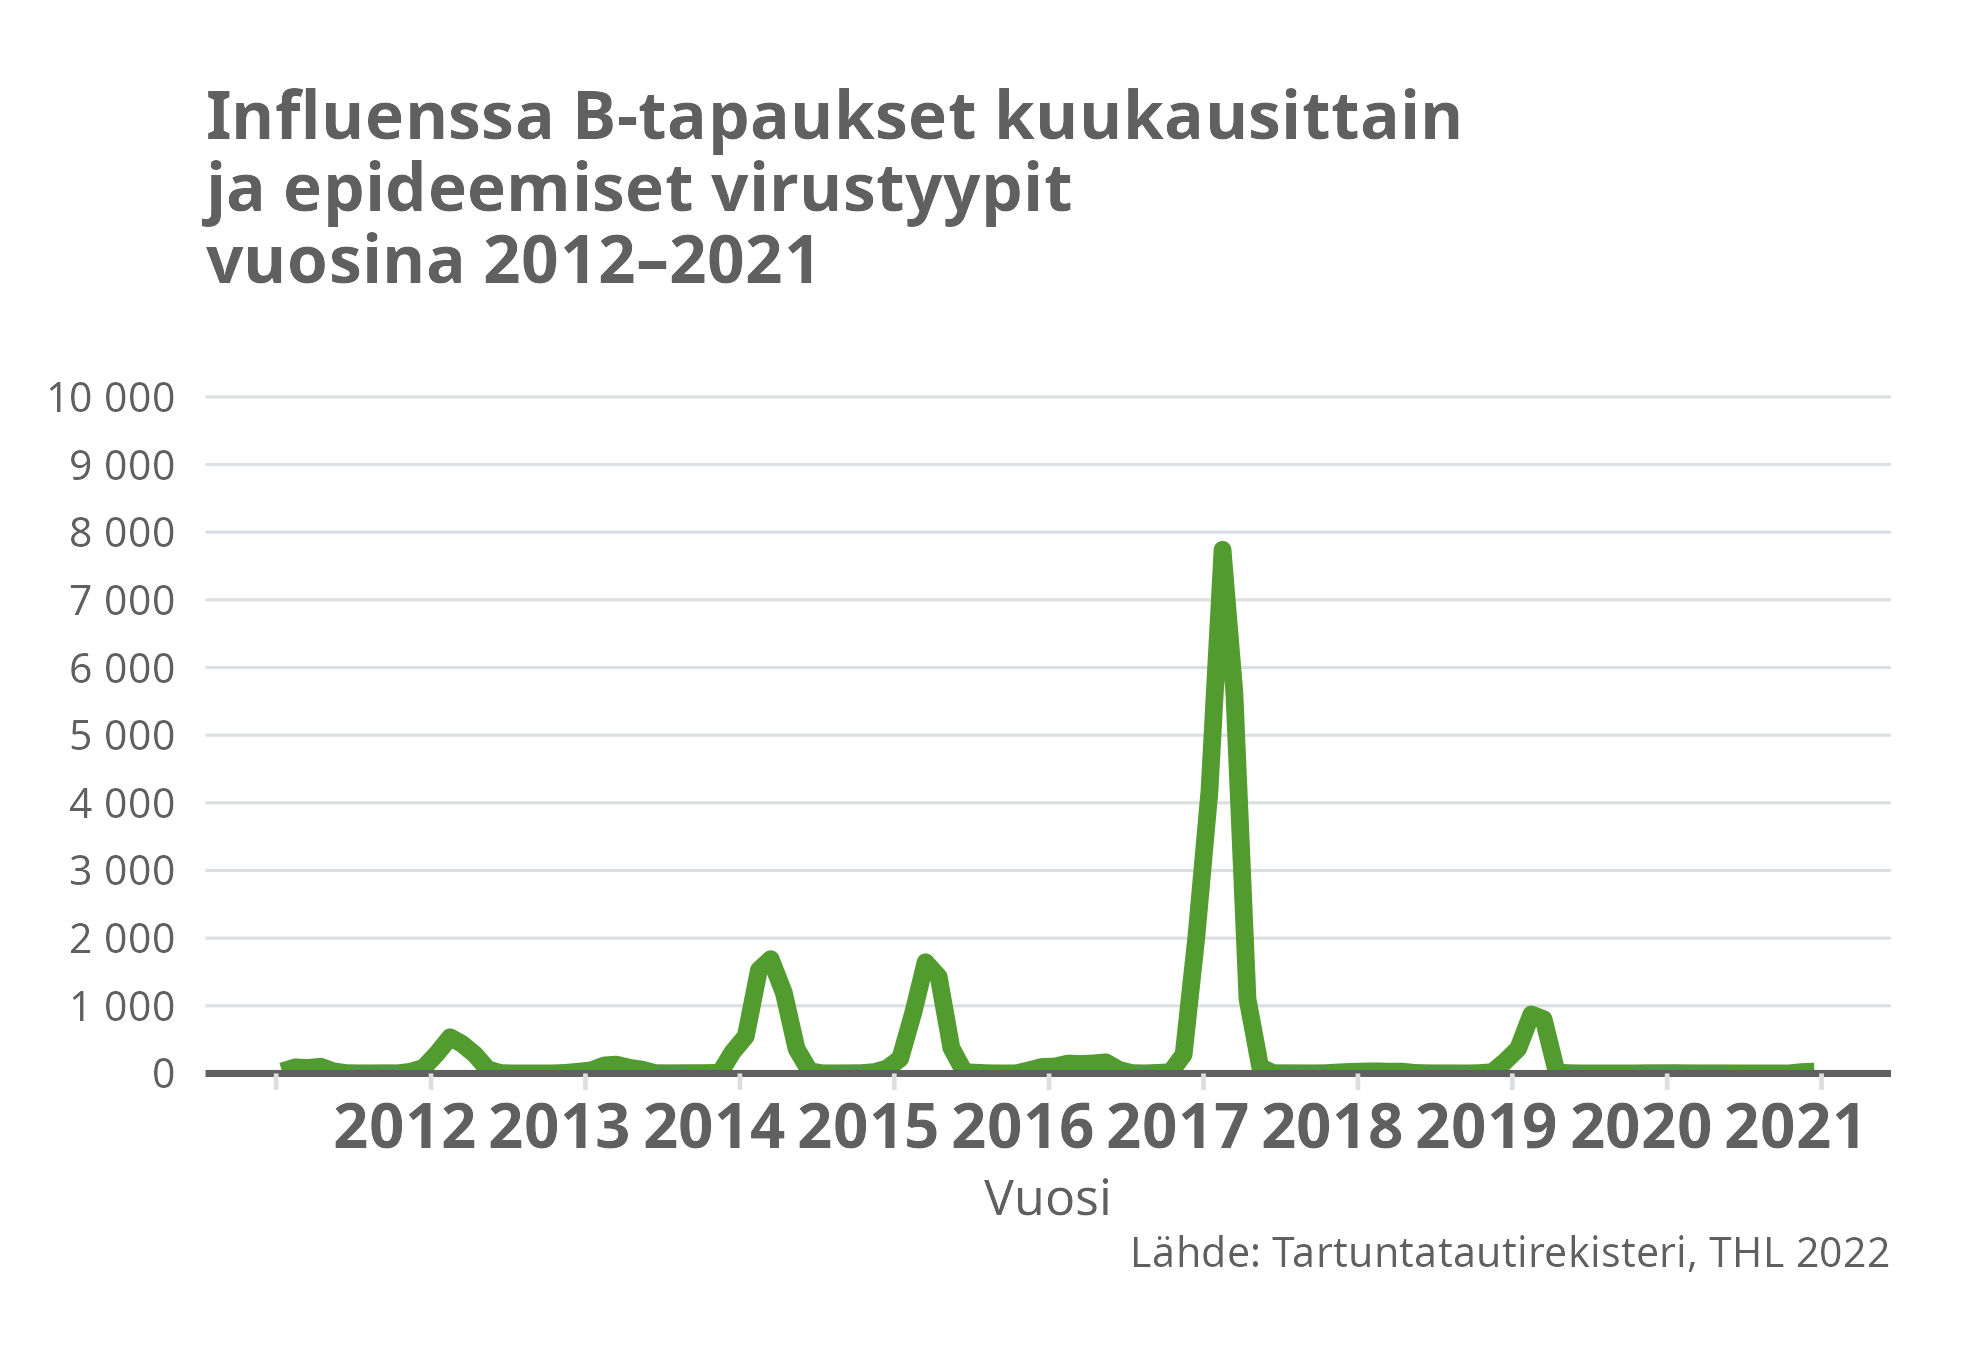 Influenssa B-tapaukset kuukausittain ja epideemiset virustyypit vuosina 2012-2021.